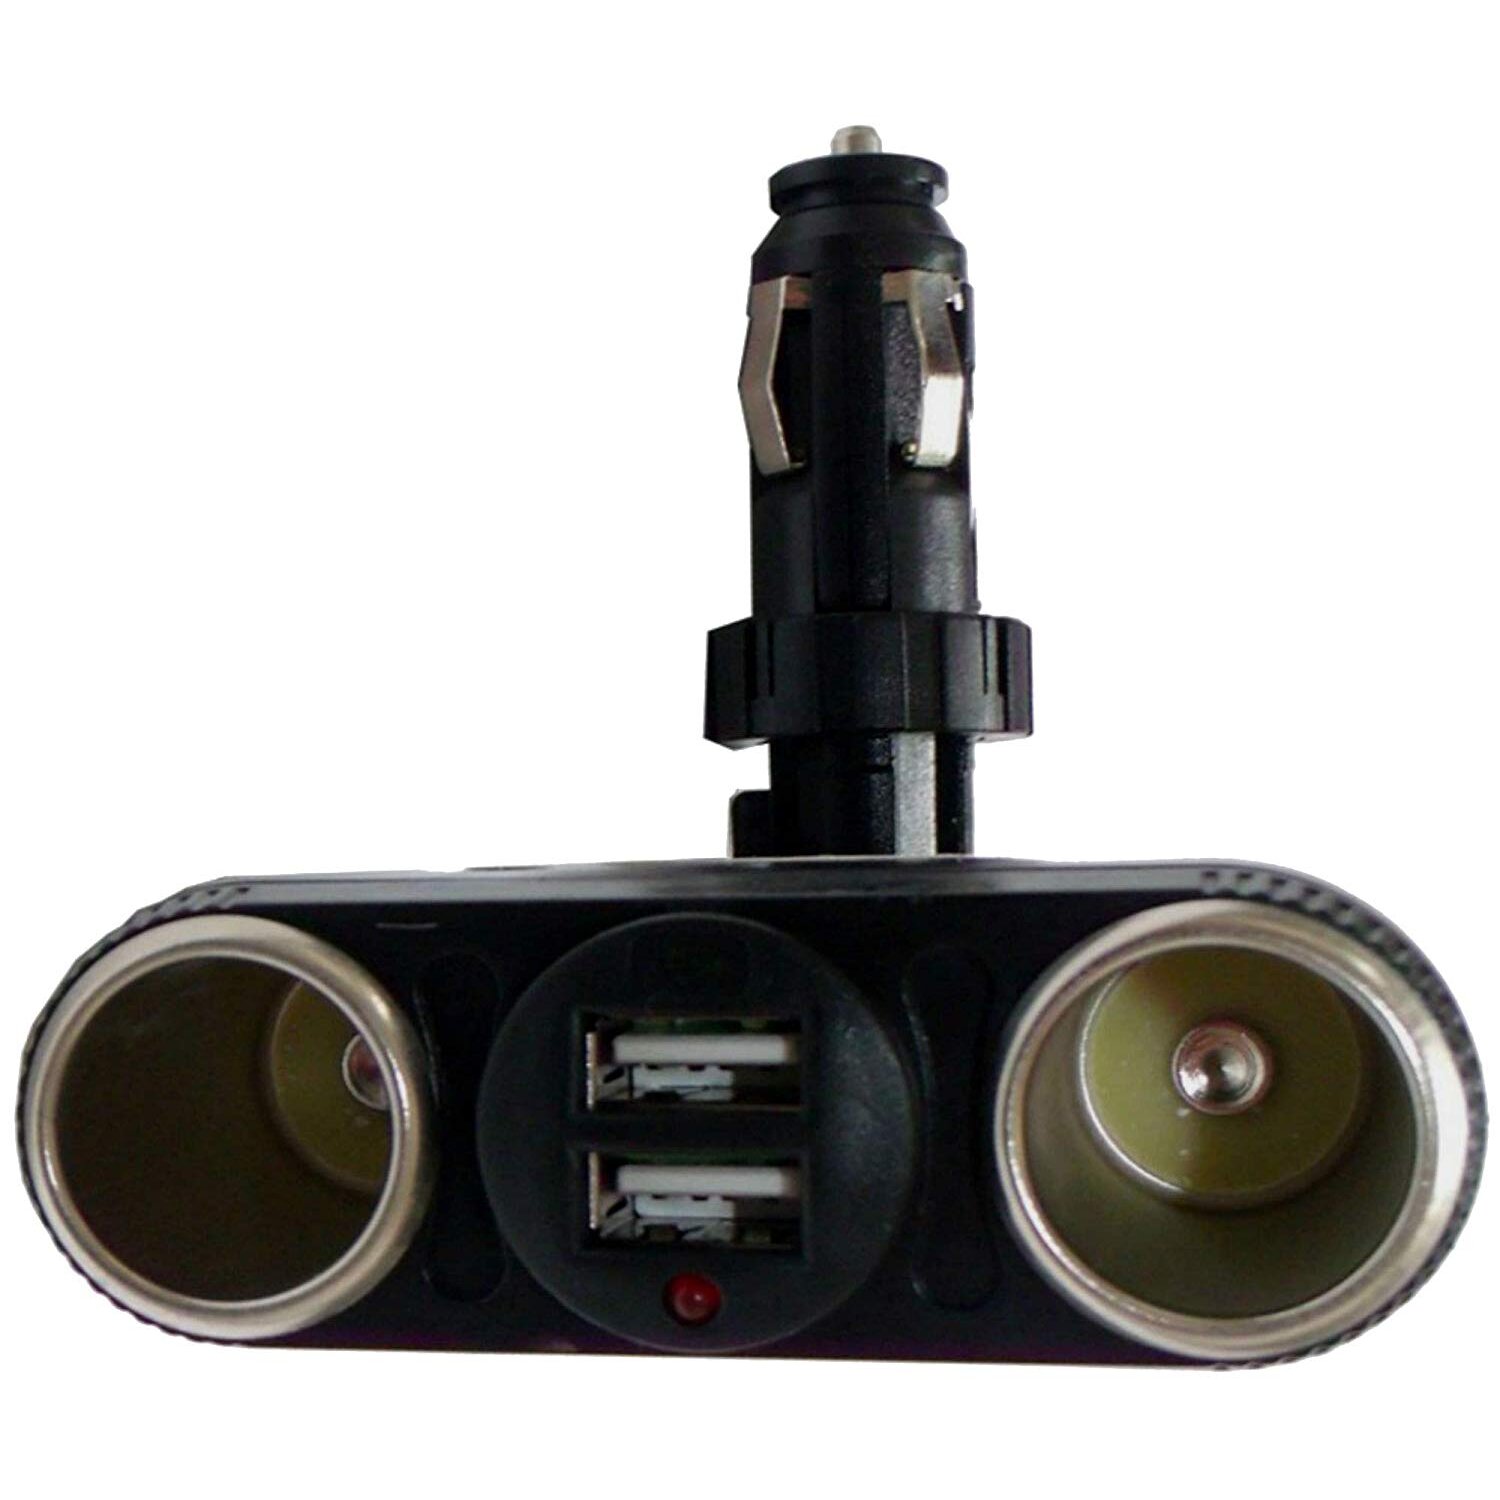 Zigarettenanzünder-Stecker mit Schalter für KFZ 8A  Universal 12-24V  Stecker für Auto, LKW, PKW, Boot und Wohnmobil